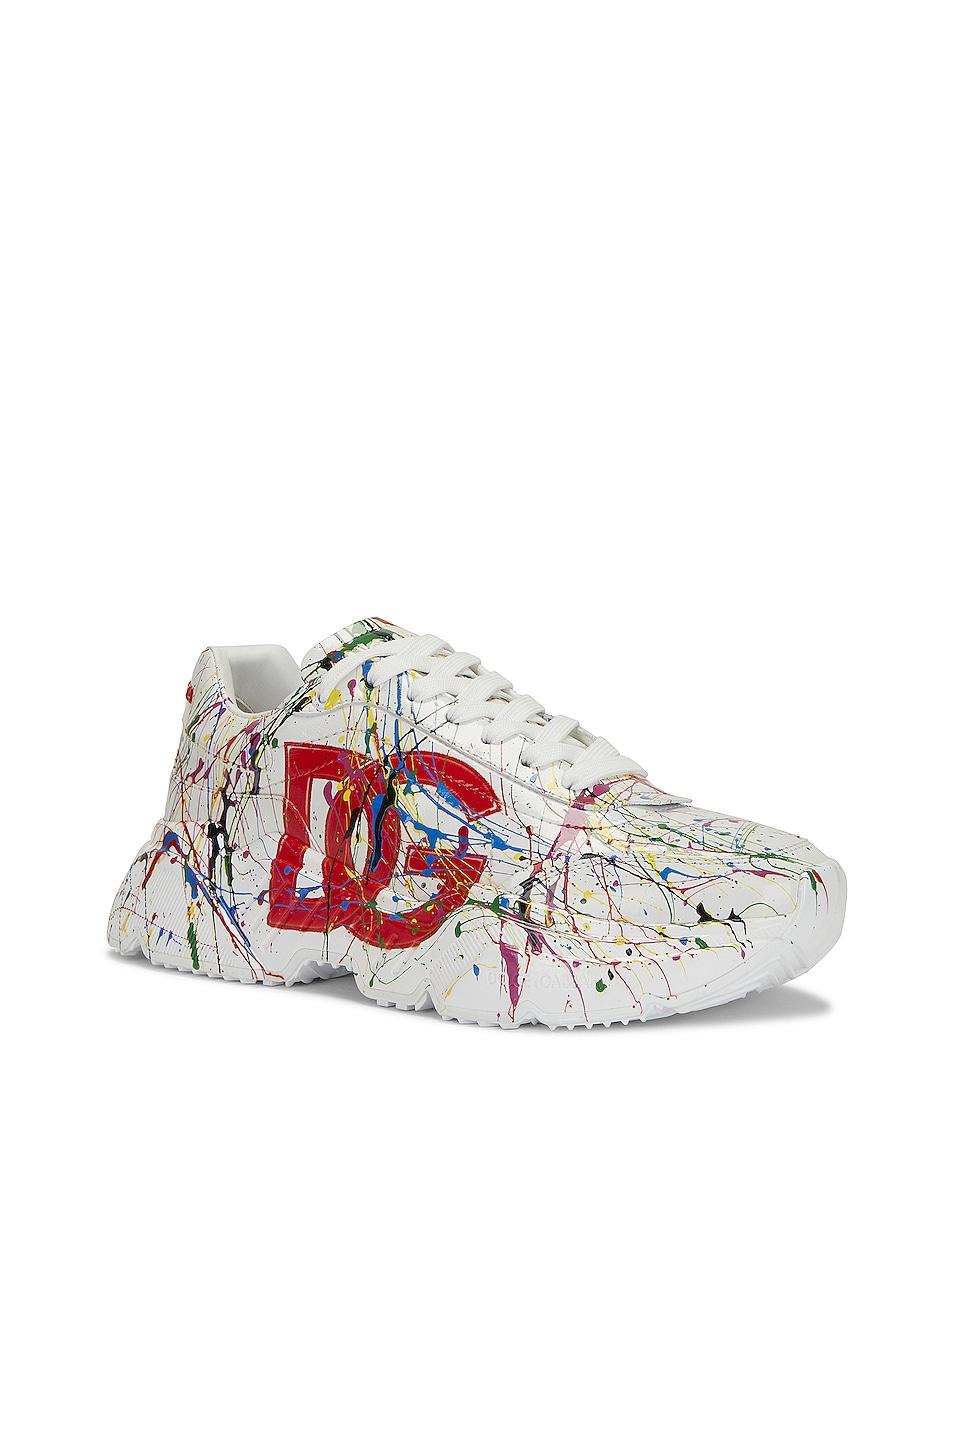 Dolce & Gabbana Paint Splatter Sneaker for Men